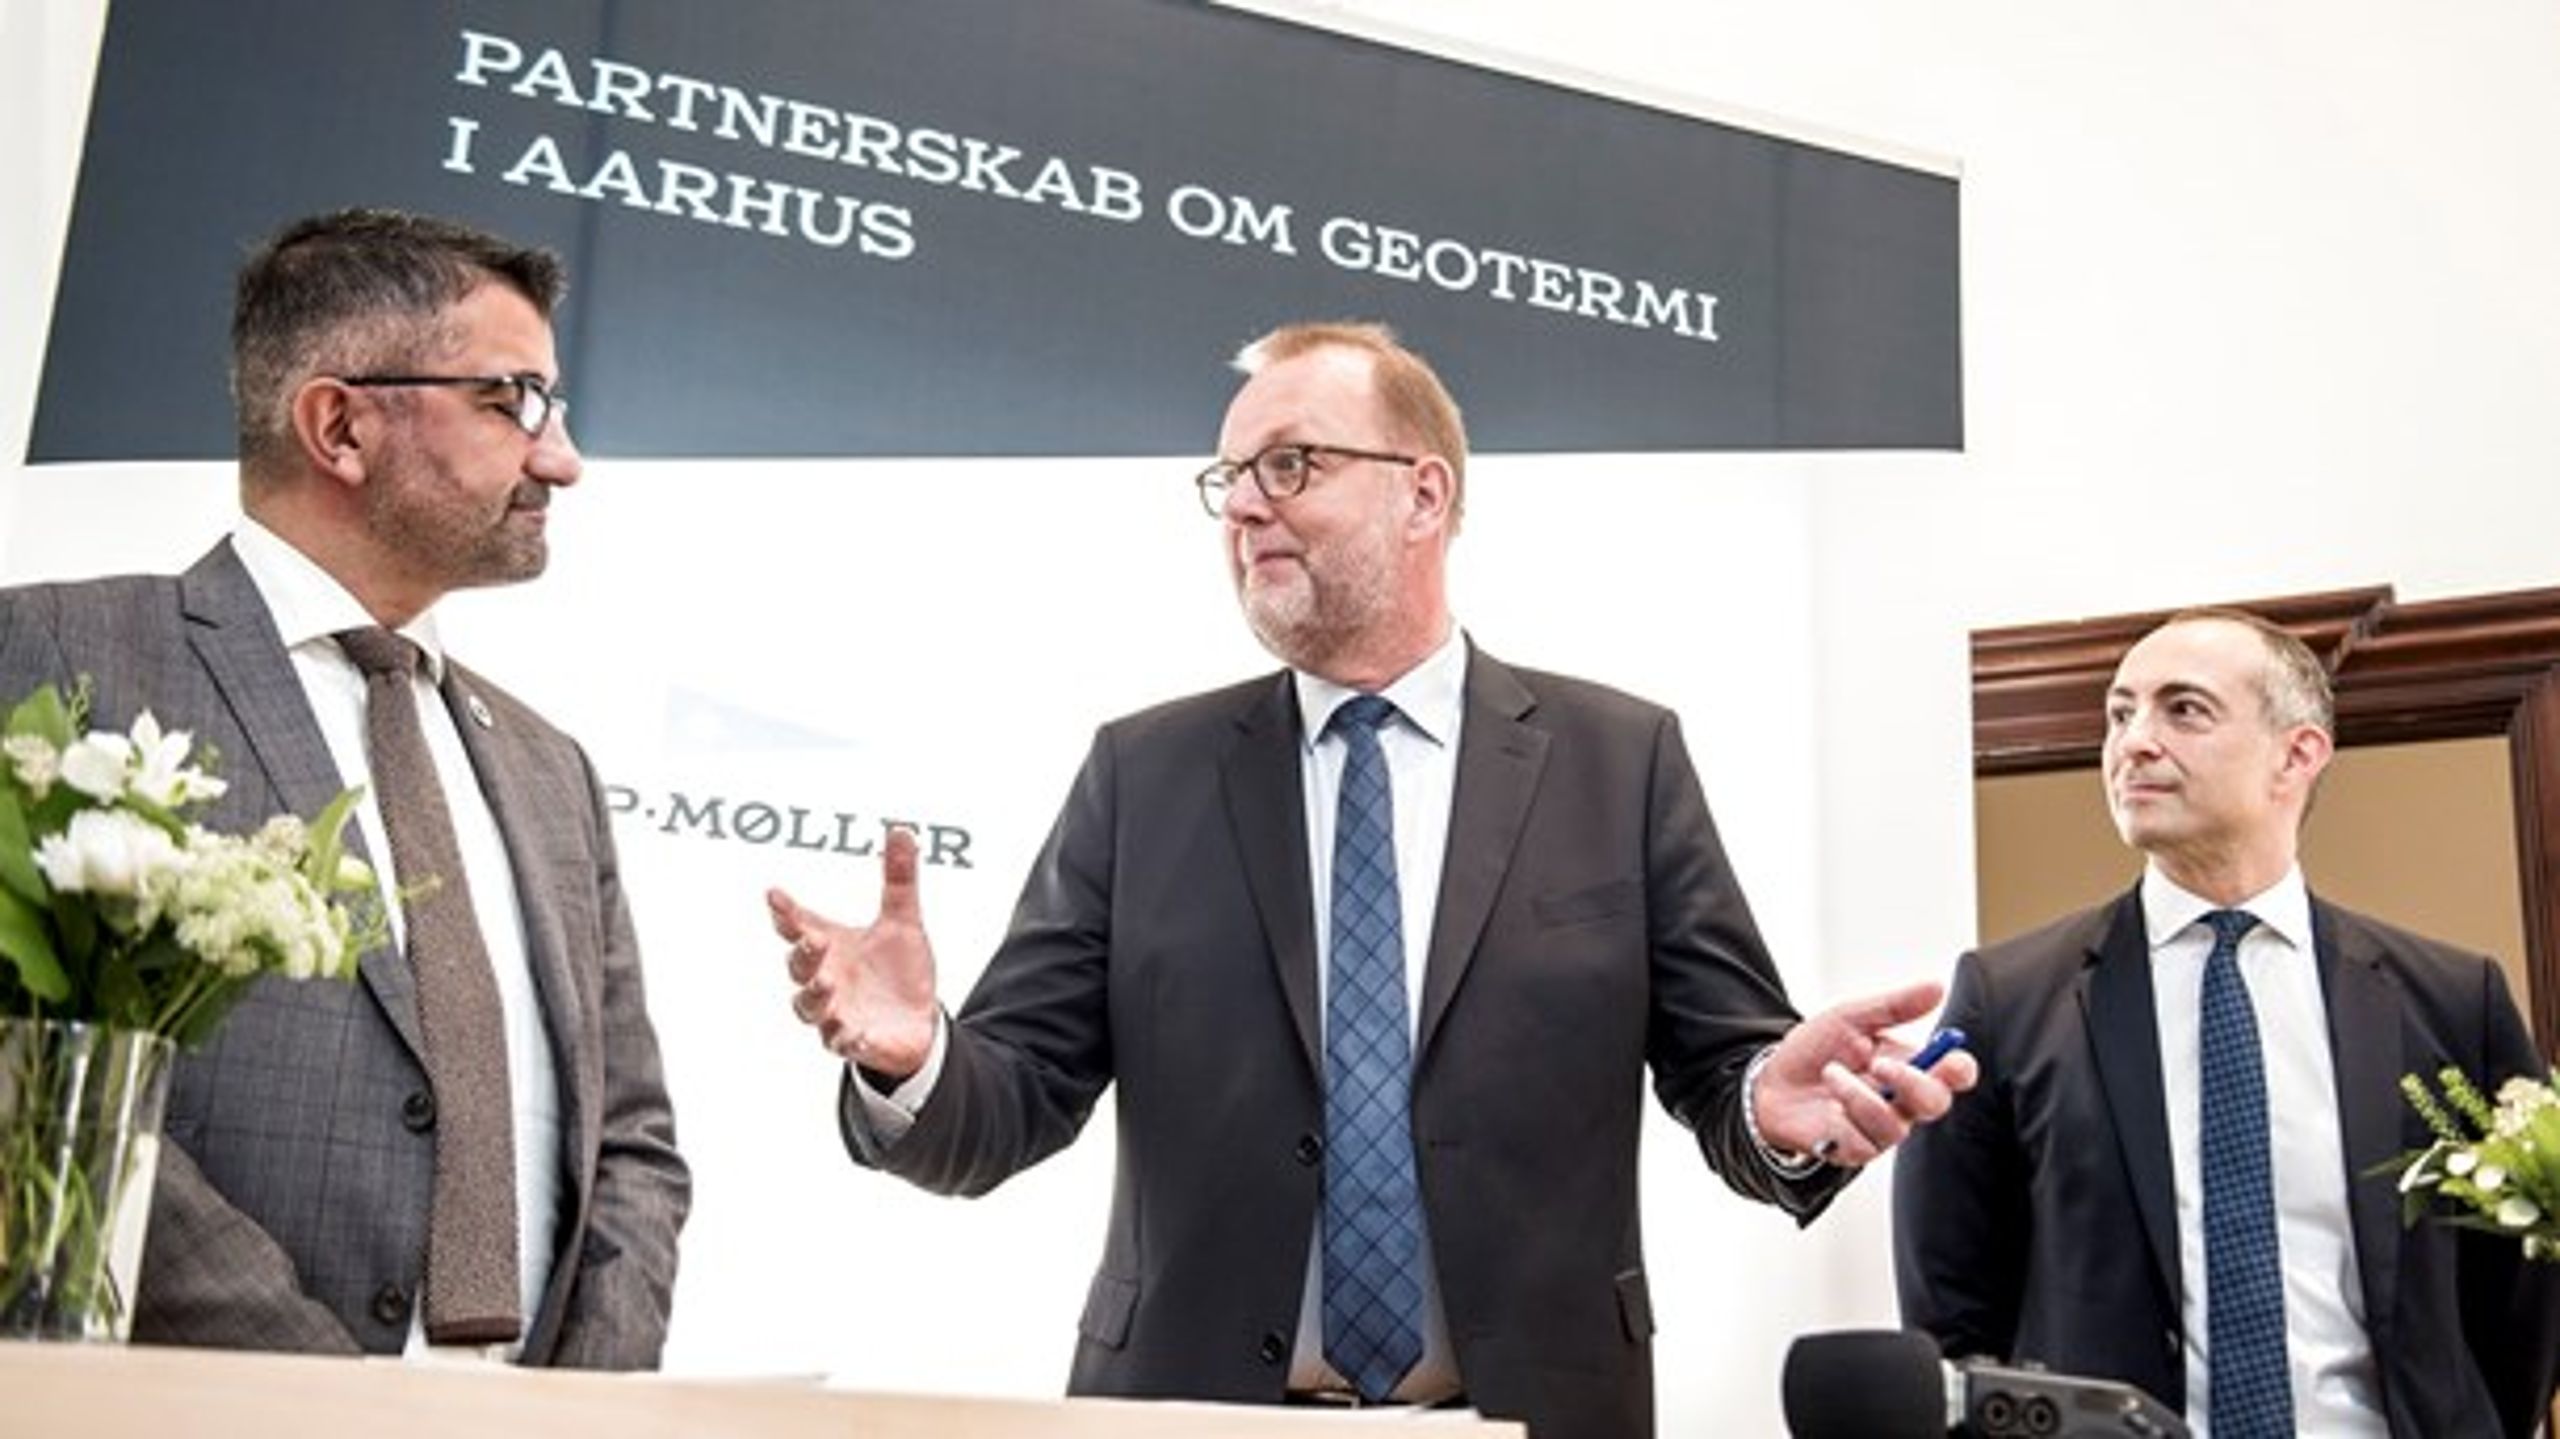 Det er ikke længe siden, visionen om et nyt stort geotermiprojekt blev præsenteret i Aarhus. Men geotermiens udbredelse behøver yderligere politisk hjælp, mener Enhedslisten.